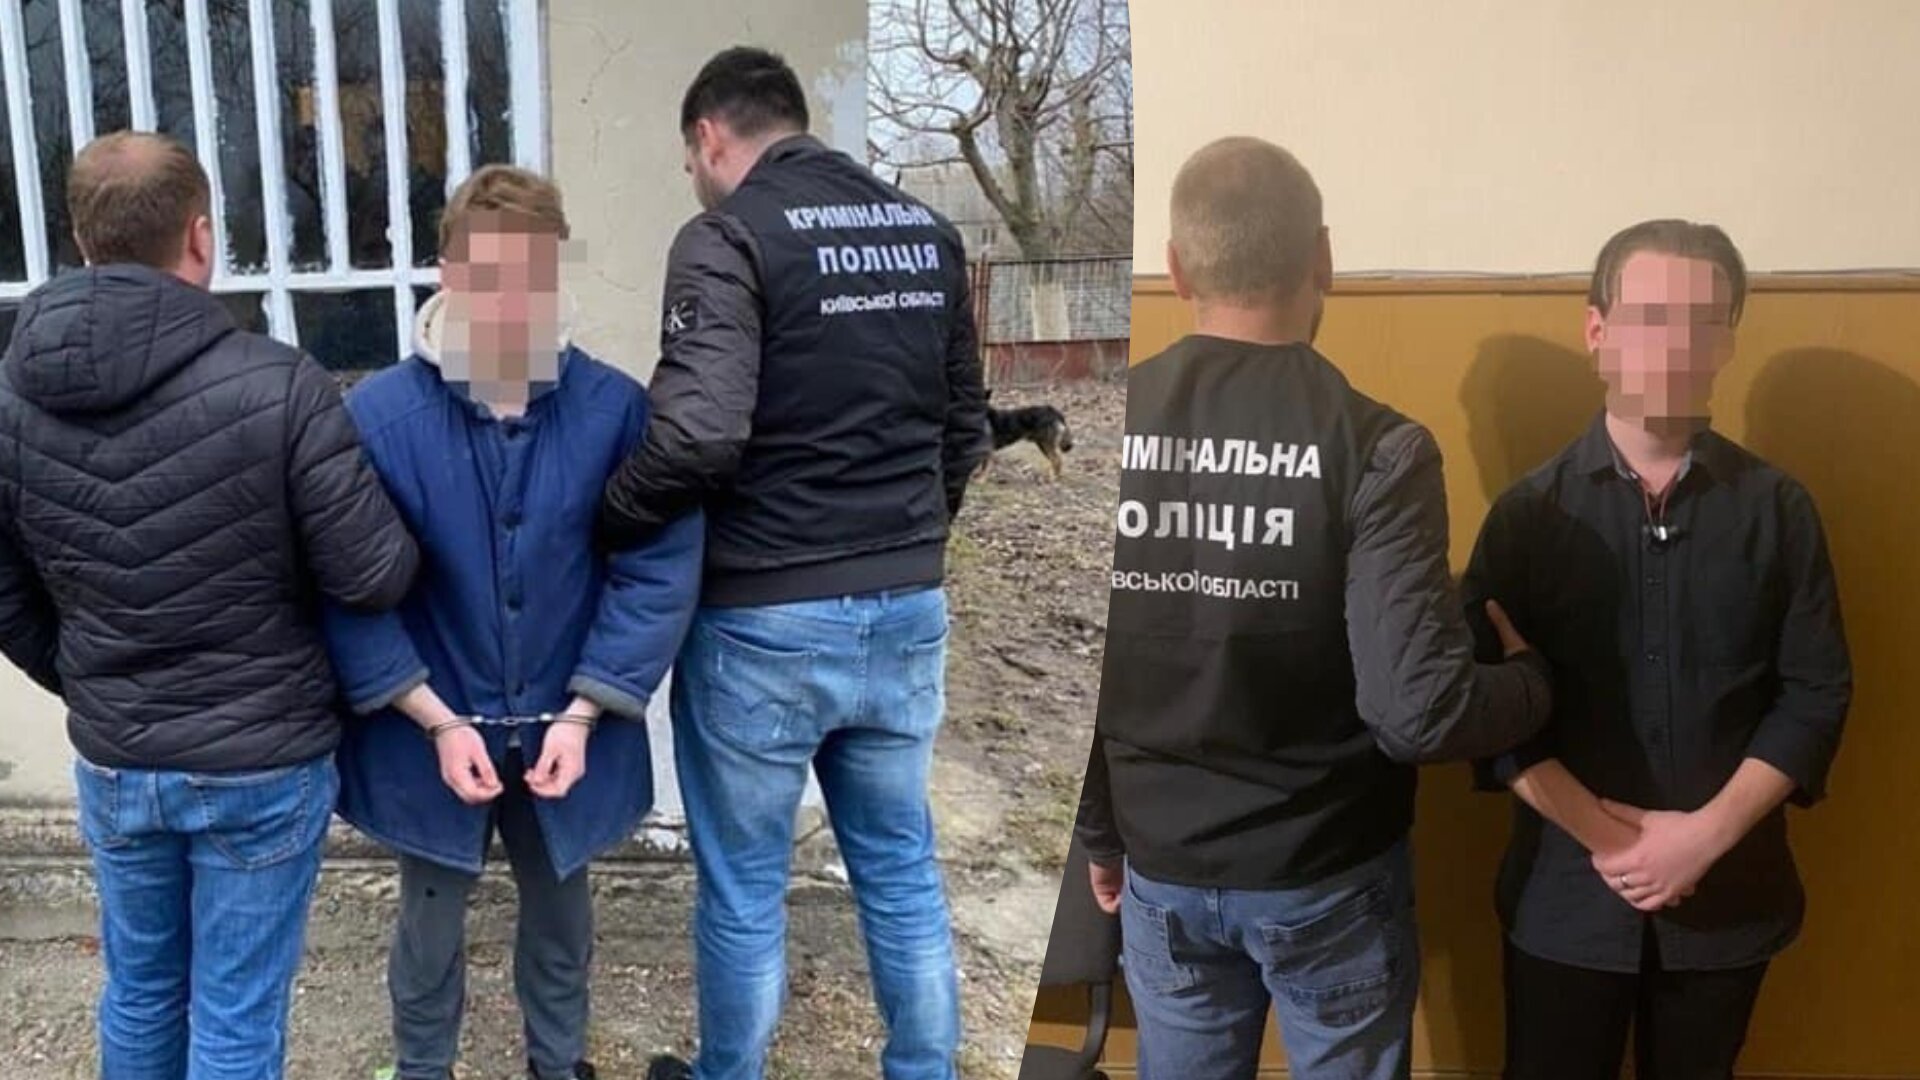 На Київщині суд відправив на 12 років за ґрати 19-річного юнака, який замовив вбивство свого батька заради отримання спадщини. Його друга – виконавця замовлення, засудили до 13 років в'язниці.